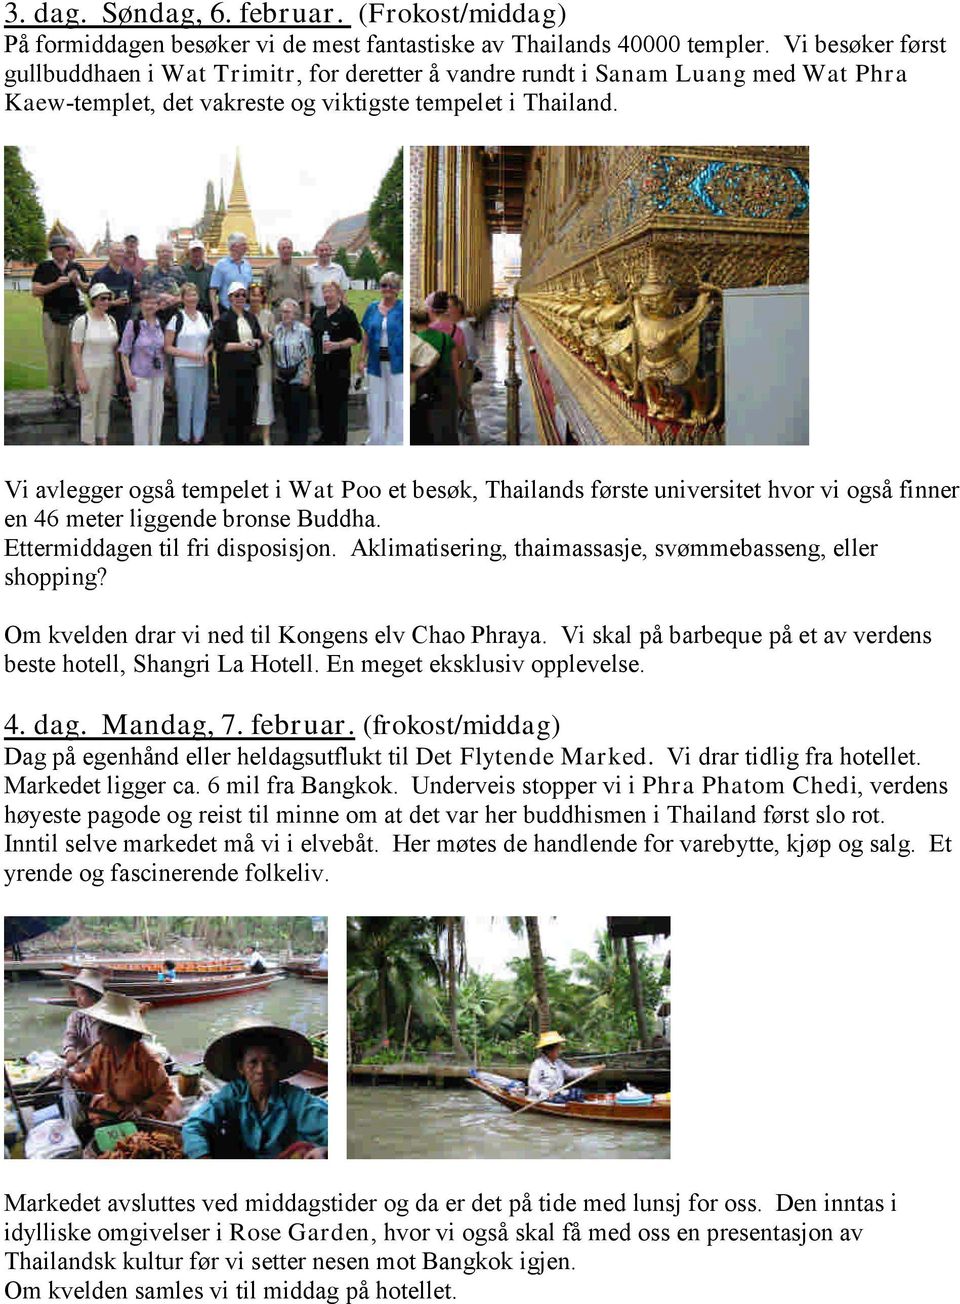 Vi avlegger også tempelet i Wat Poo et besøk, Thailands første universitet hvor vi også finner en 46 meter liggende bronse Buddha. Ettermiddagen til fri disposisjon.